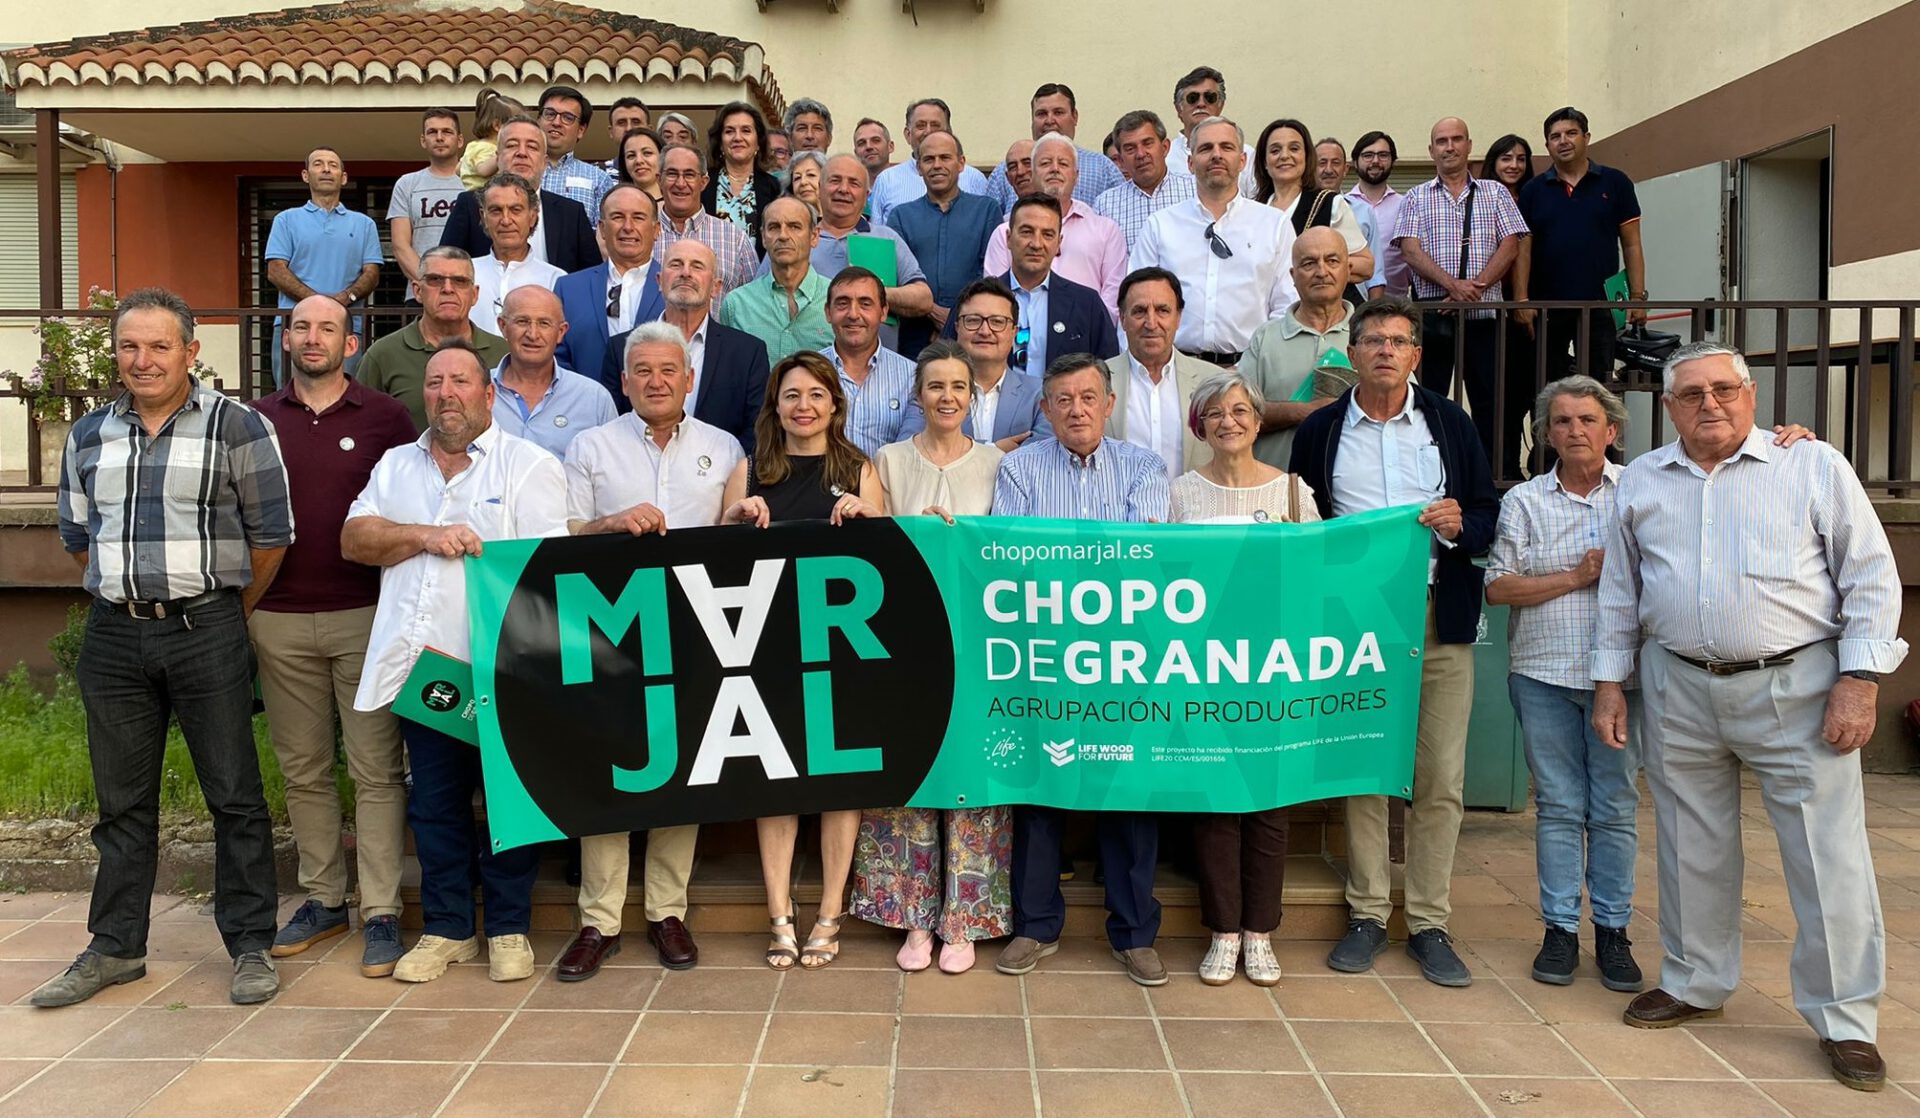 Más de 70 productores andaluces con casi 1.300 hectáreas de tierra se asocian bajo la marca Marjal Chopo de Granada